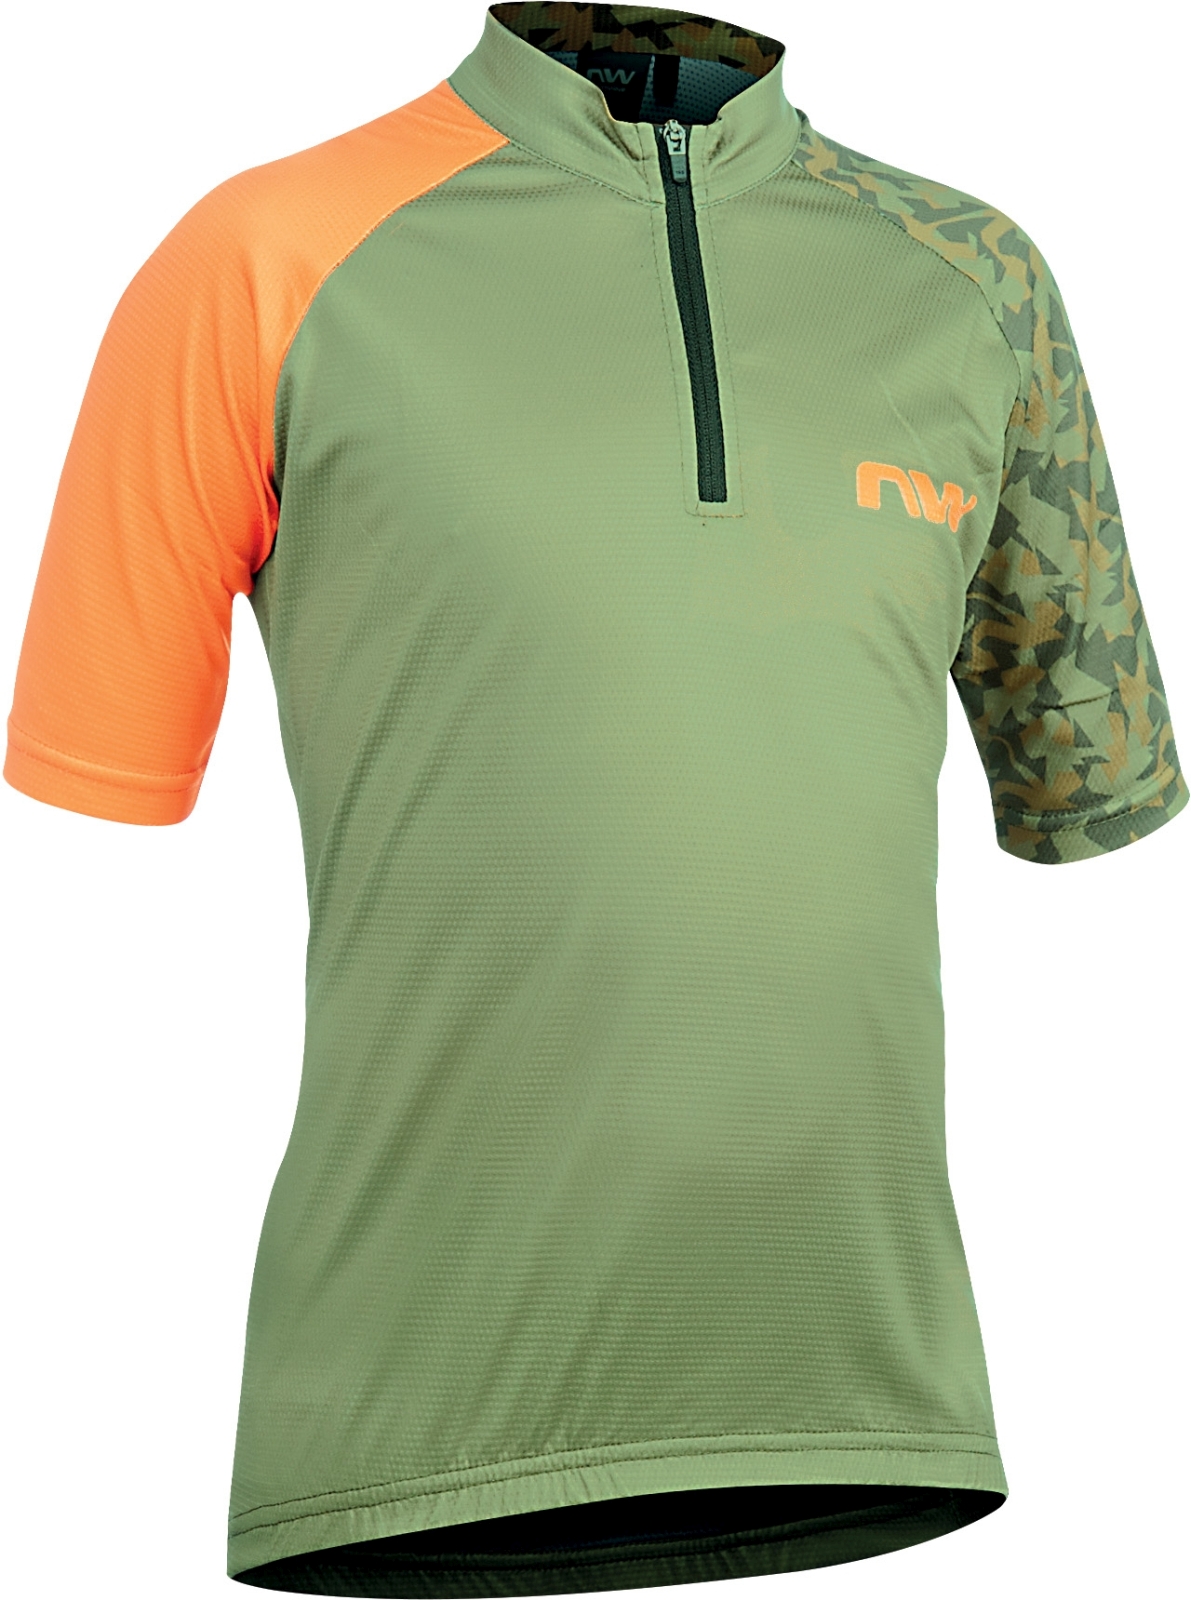 Northwave Origin Junior Jersey Short Sleeve - green forest/orange 144-150